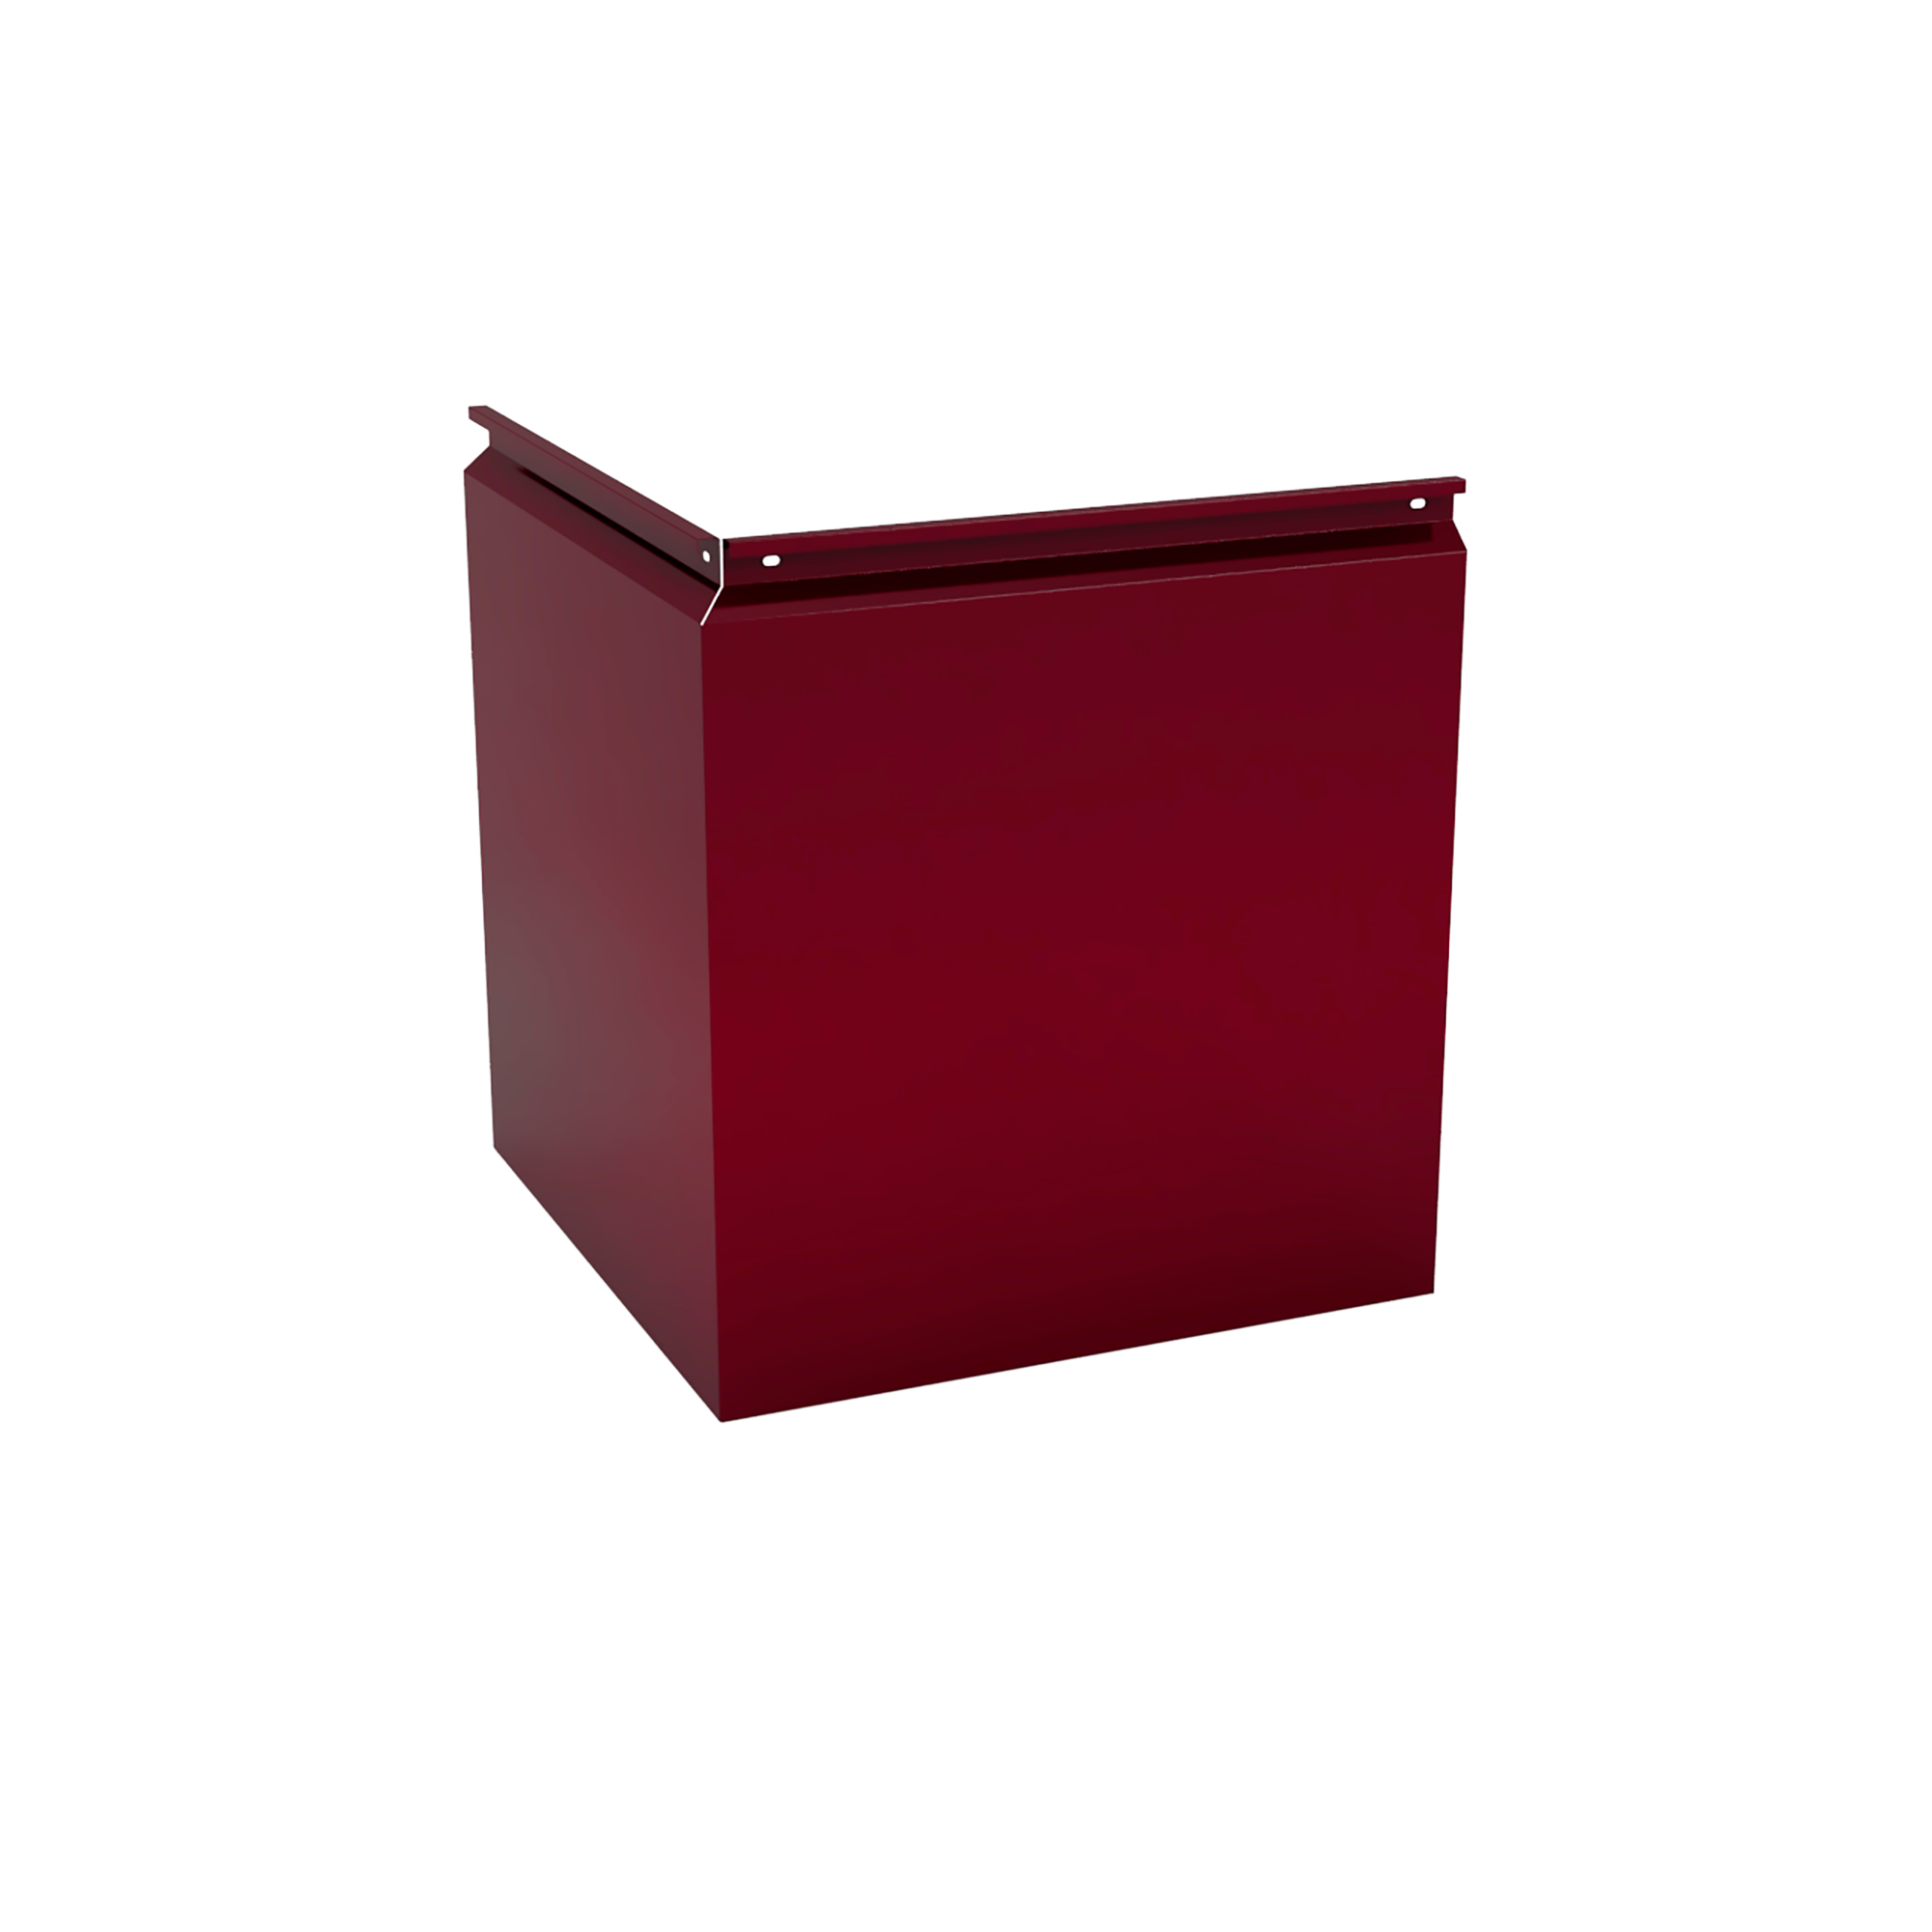 Фасадная кассета Угловая 340 Красно-коричневый 1,2 мм Фасадные кассеты Кровля Сервис